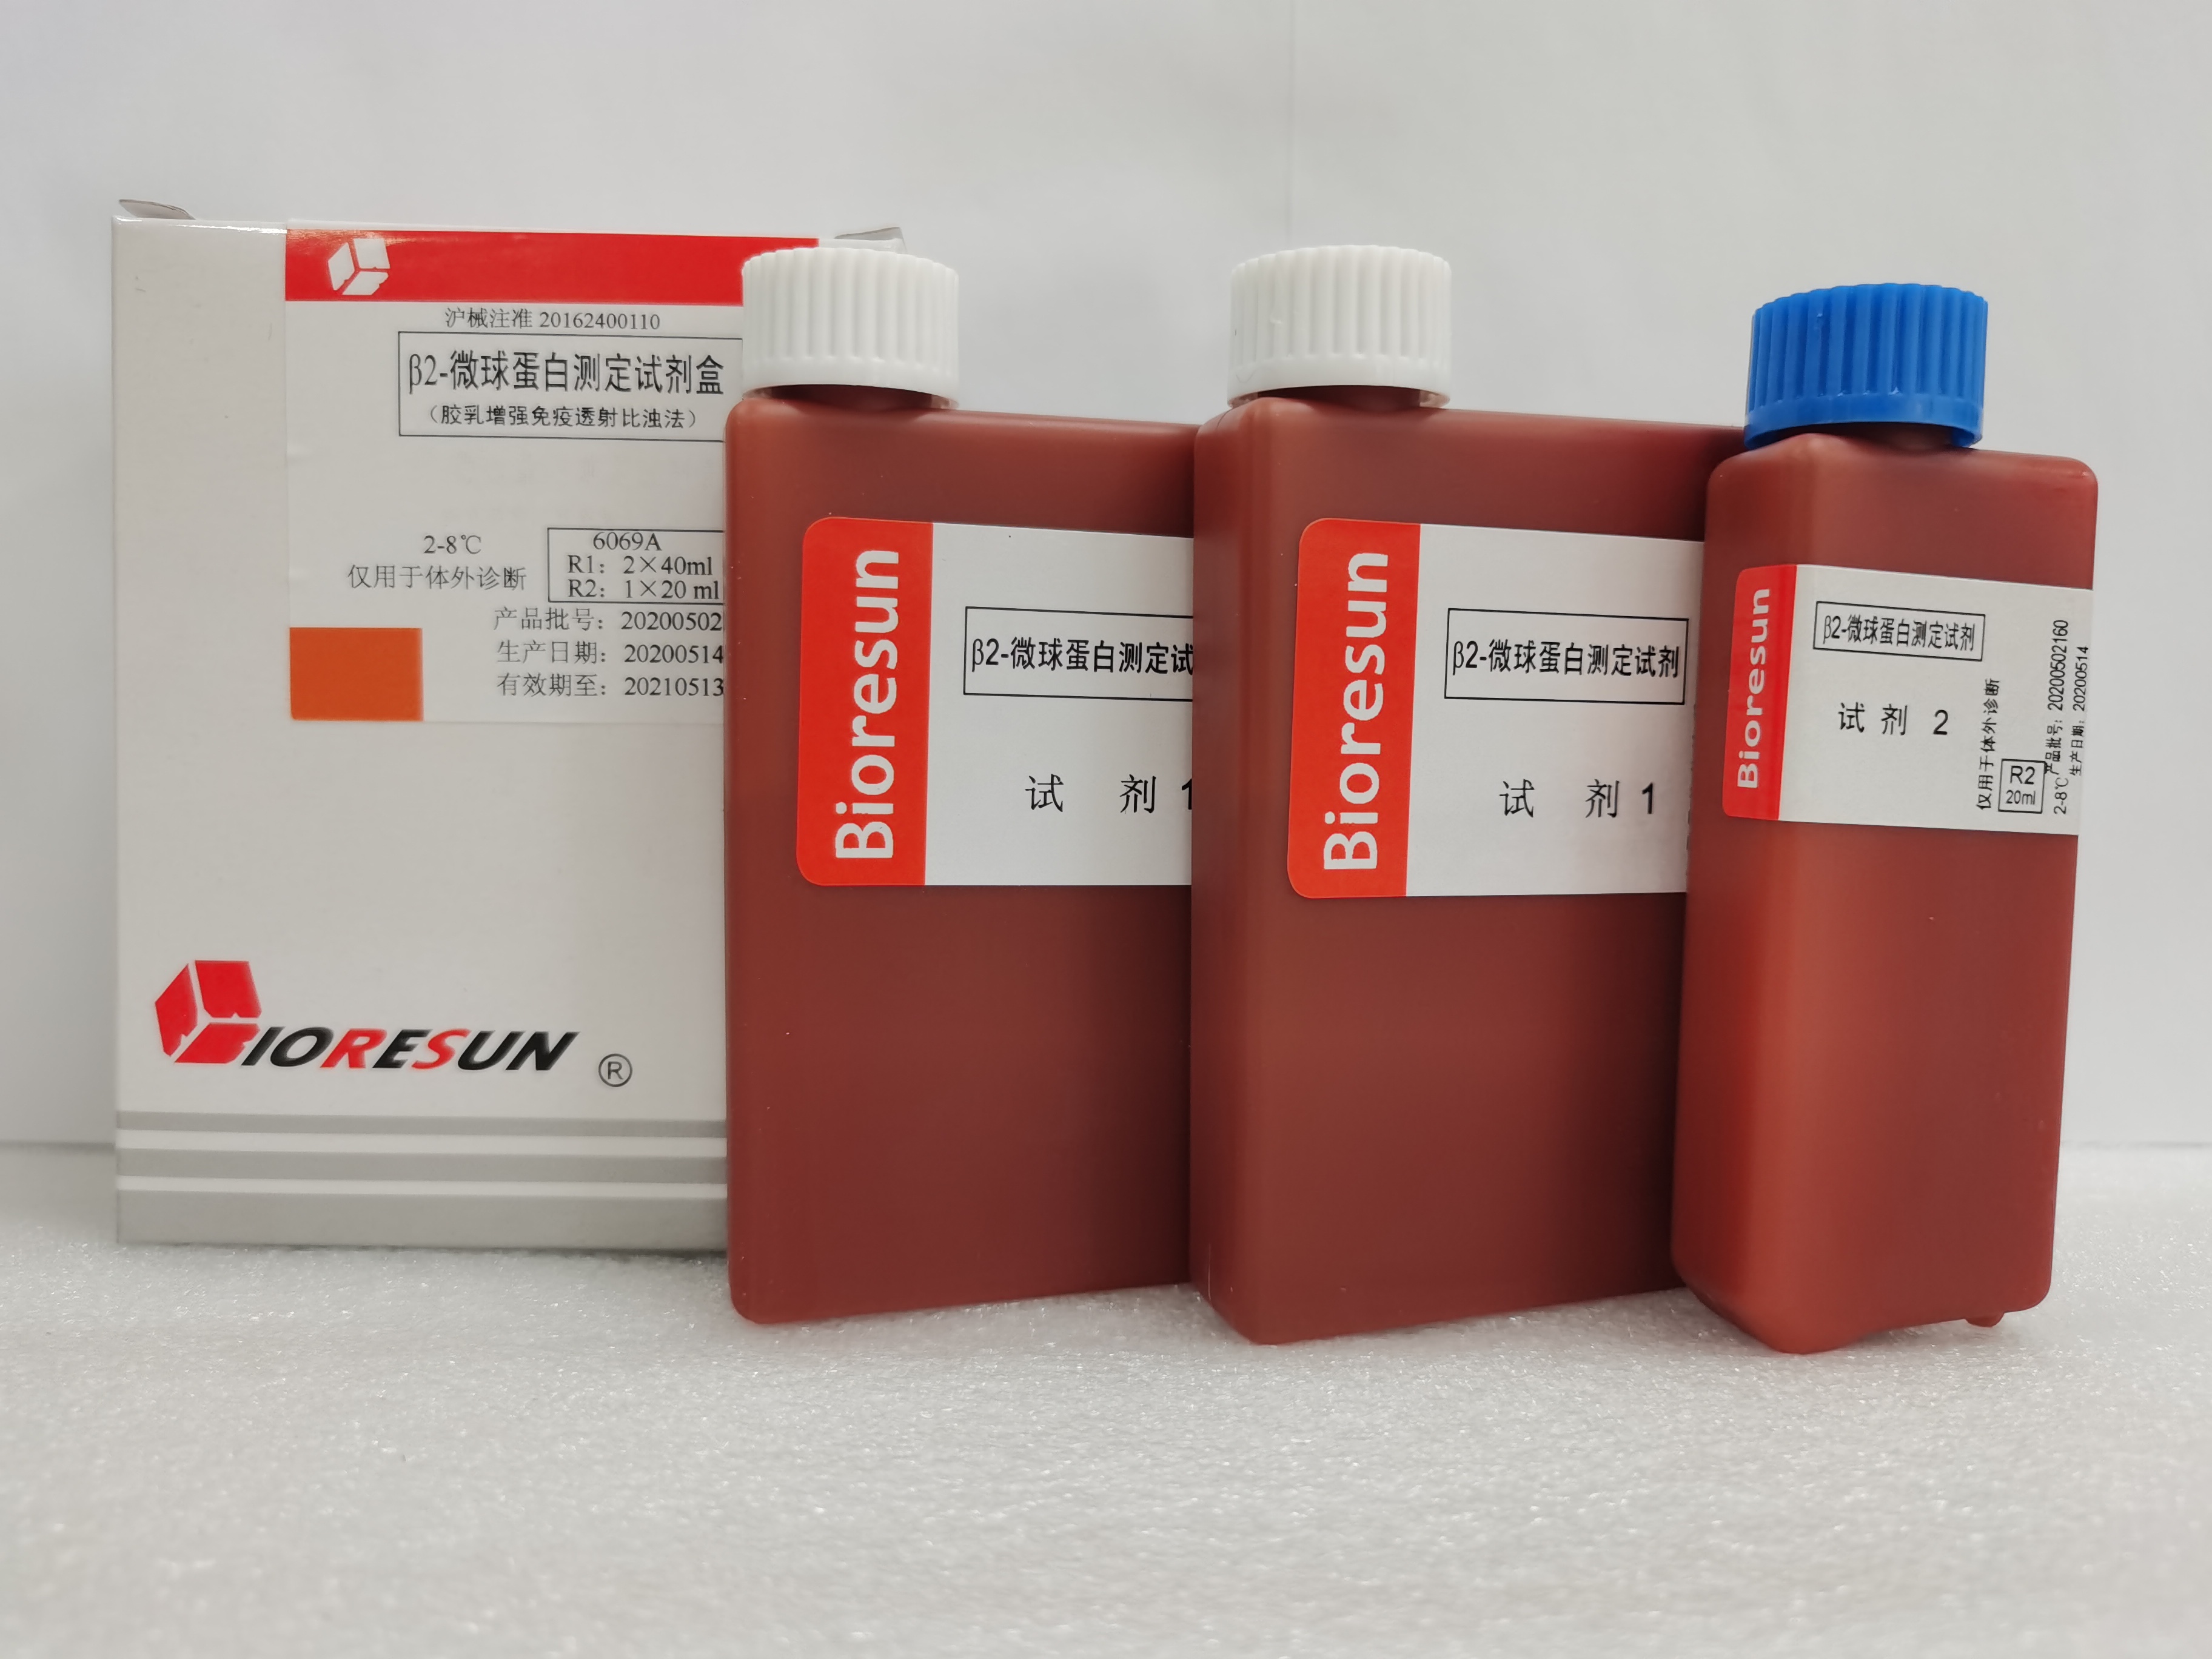 【荣盛】β2-微球蛋白测定试剂盒(胶乳增强免疫透射比浊法)